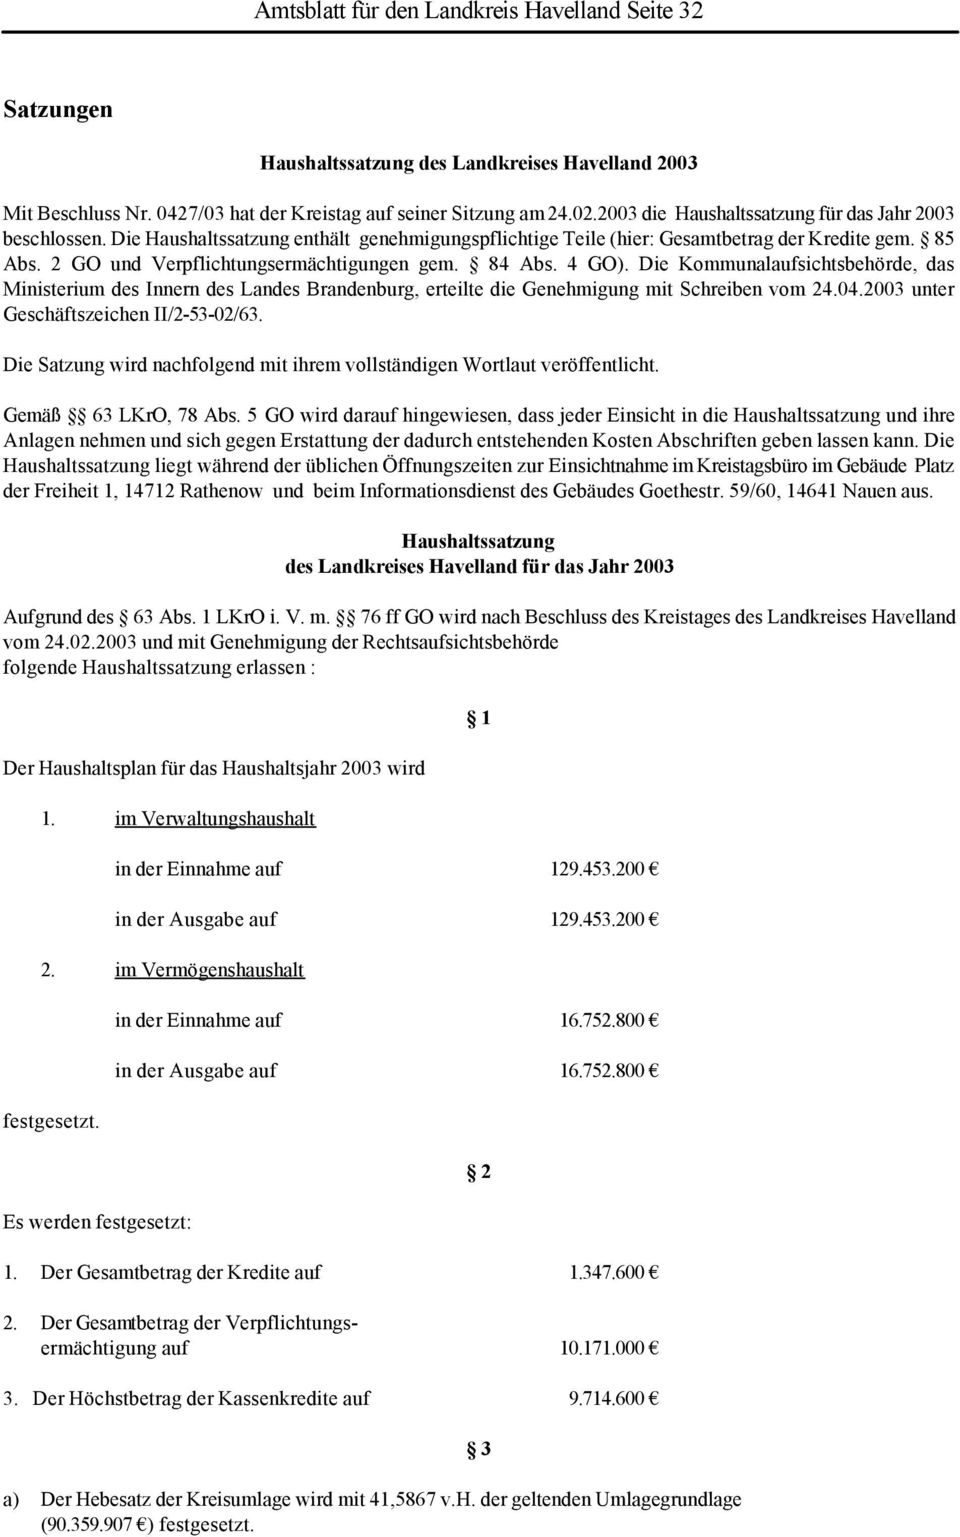 2 GO und Verpflichtungsermächtigungen gem. 84 Abs. 4 GO). Die Kommunalaufsichtsbehörde, das Ministerium des Innern des Landes Brandenburg, erteilte die Genehmigung mit Schreiben vom 24.04.